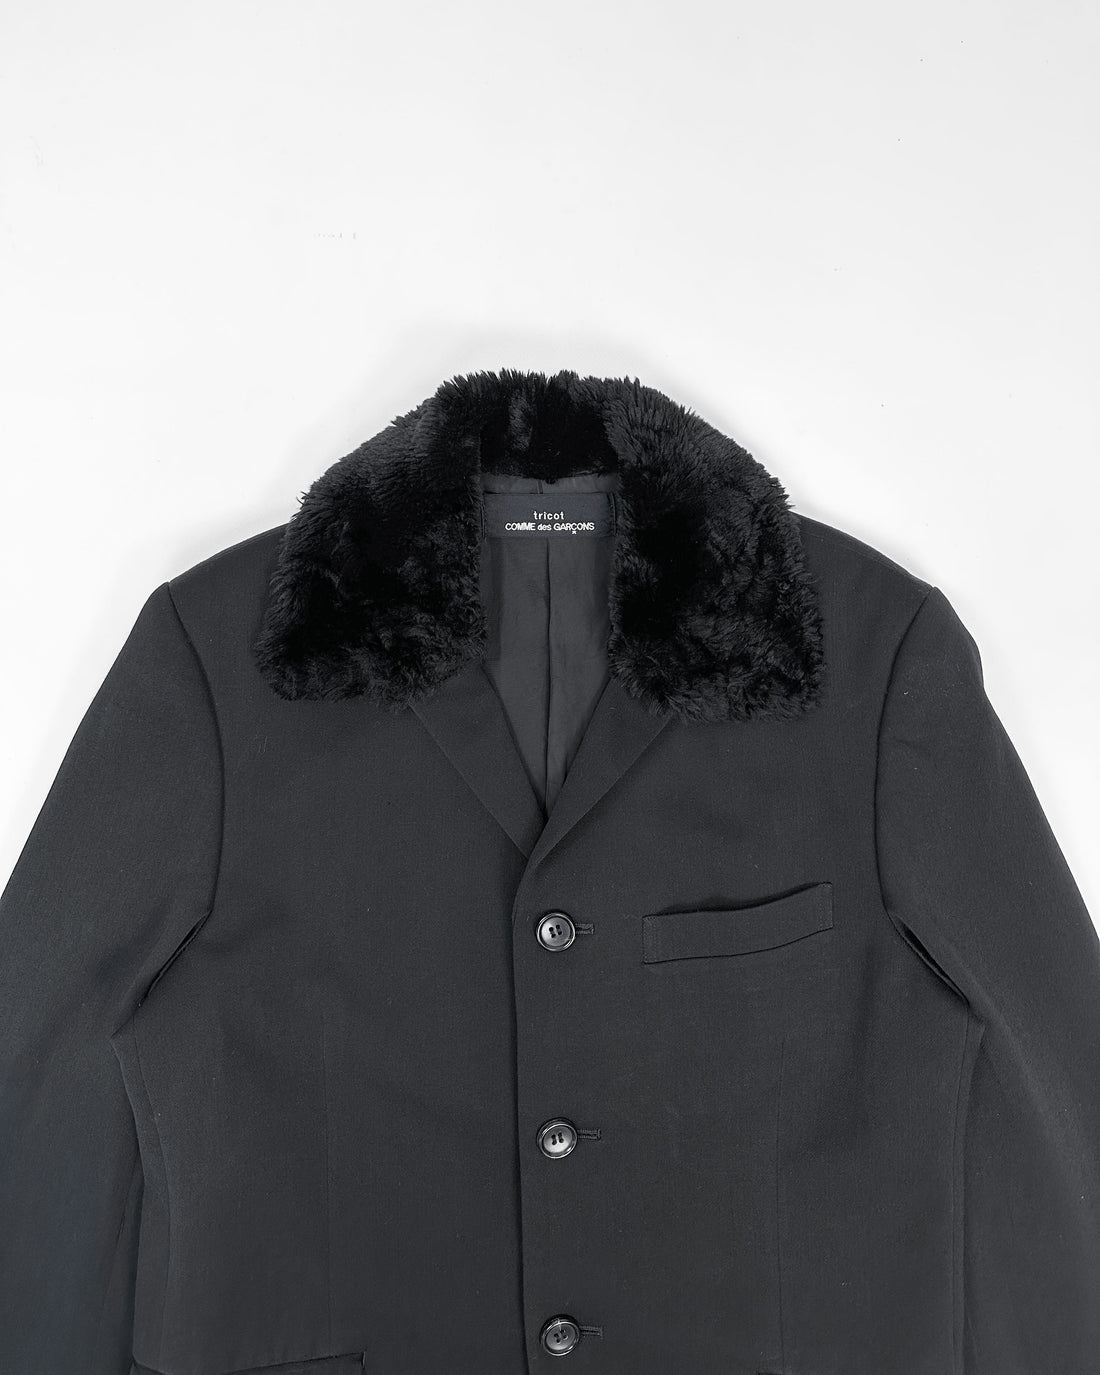 Comme des Garçons Tricot Decorated Black Jacket 1995